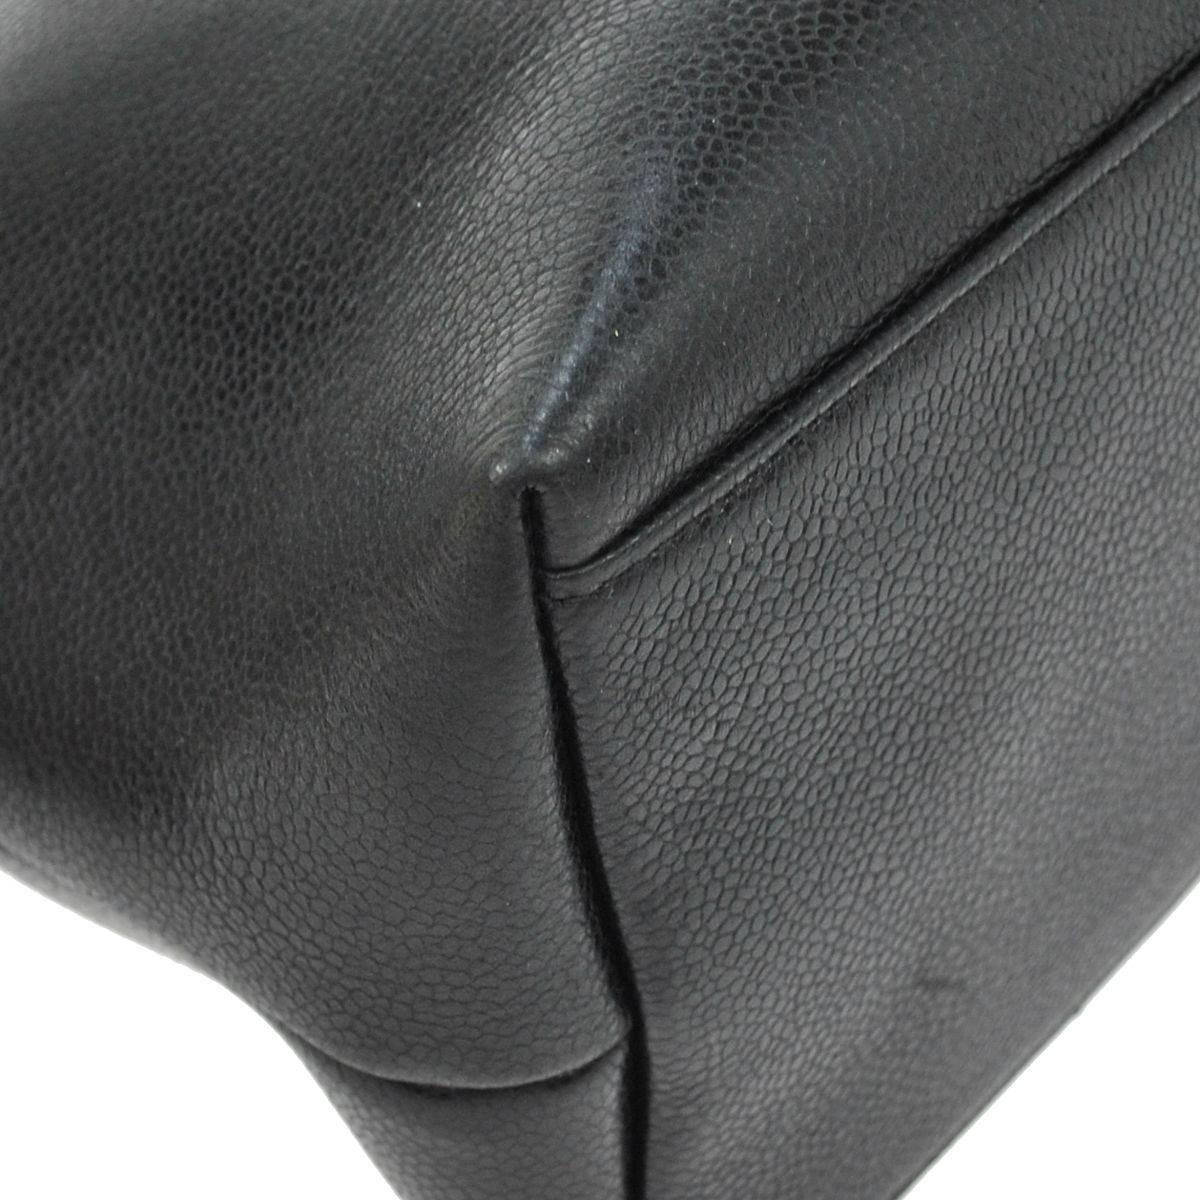 Chanel Black Caviar Leather Carryall Shopper Weekender Travel Shoulder Bag 3